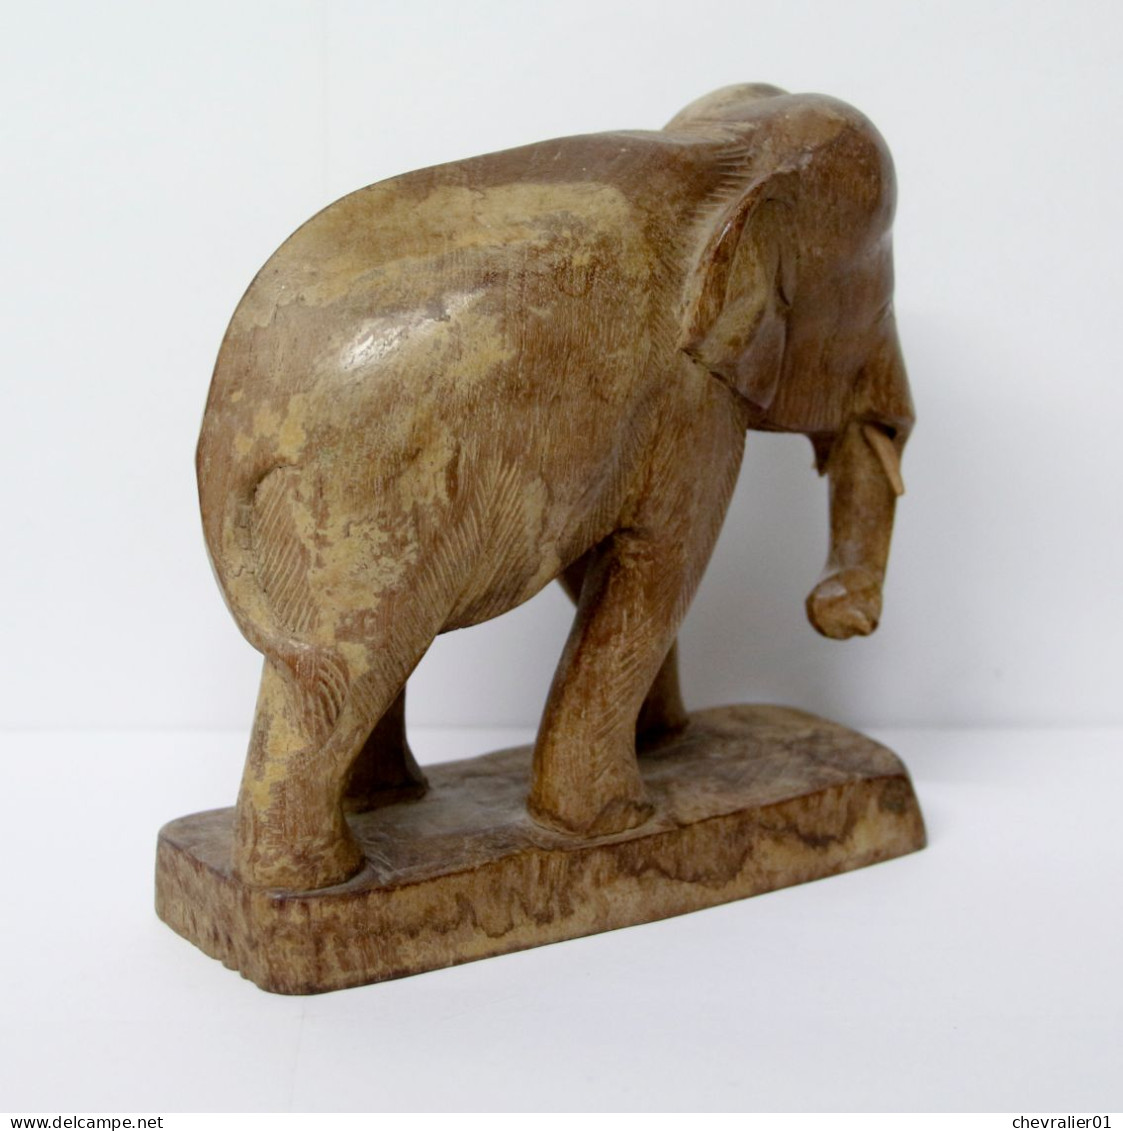 Art-antiquité_sculpture en bois_Statuette d'éléphant asiatique